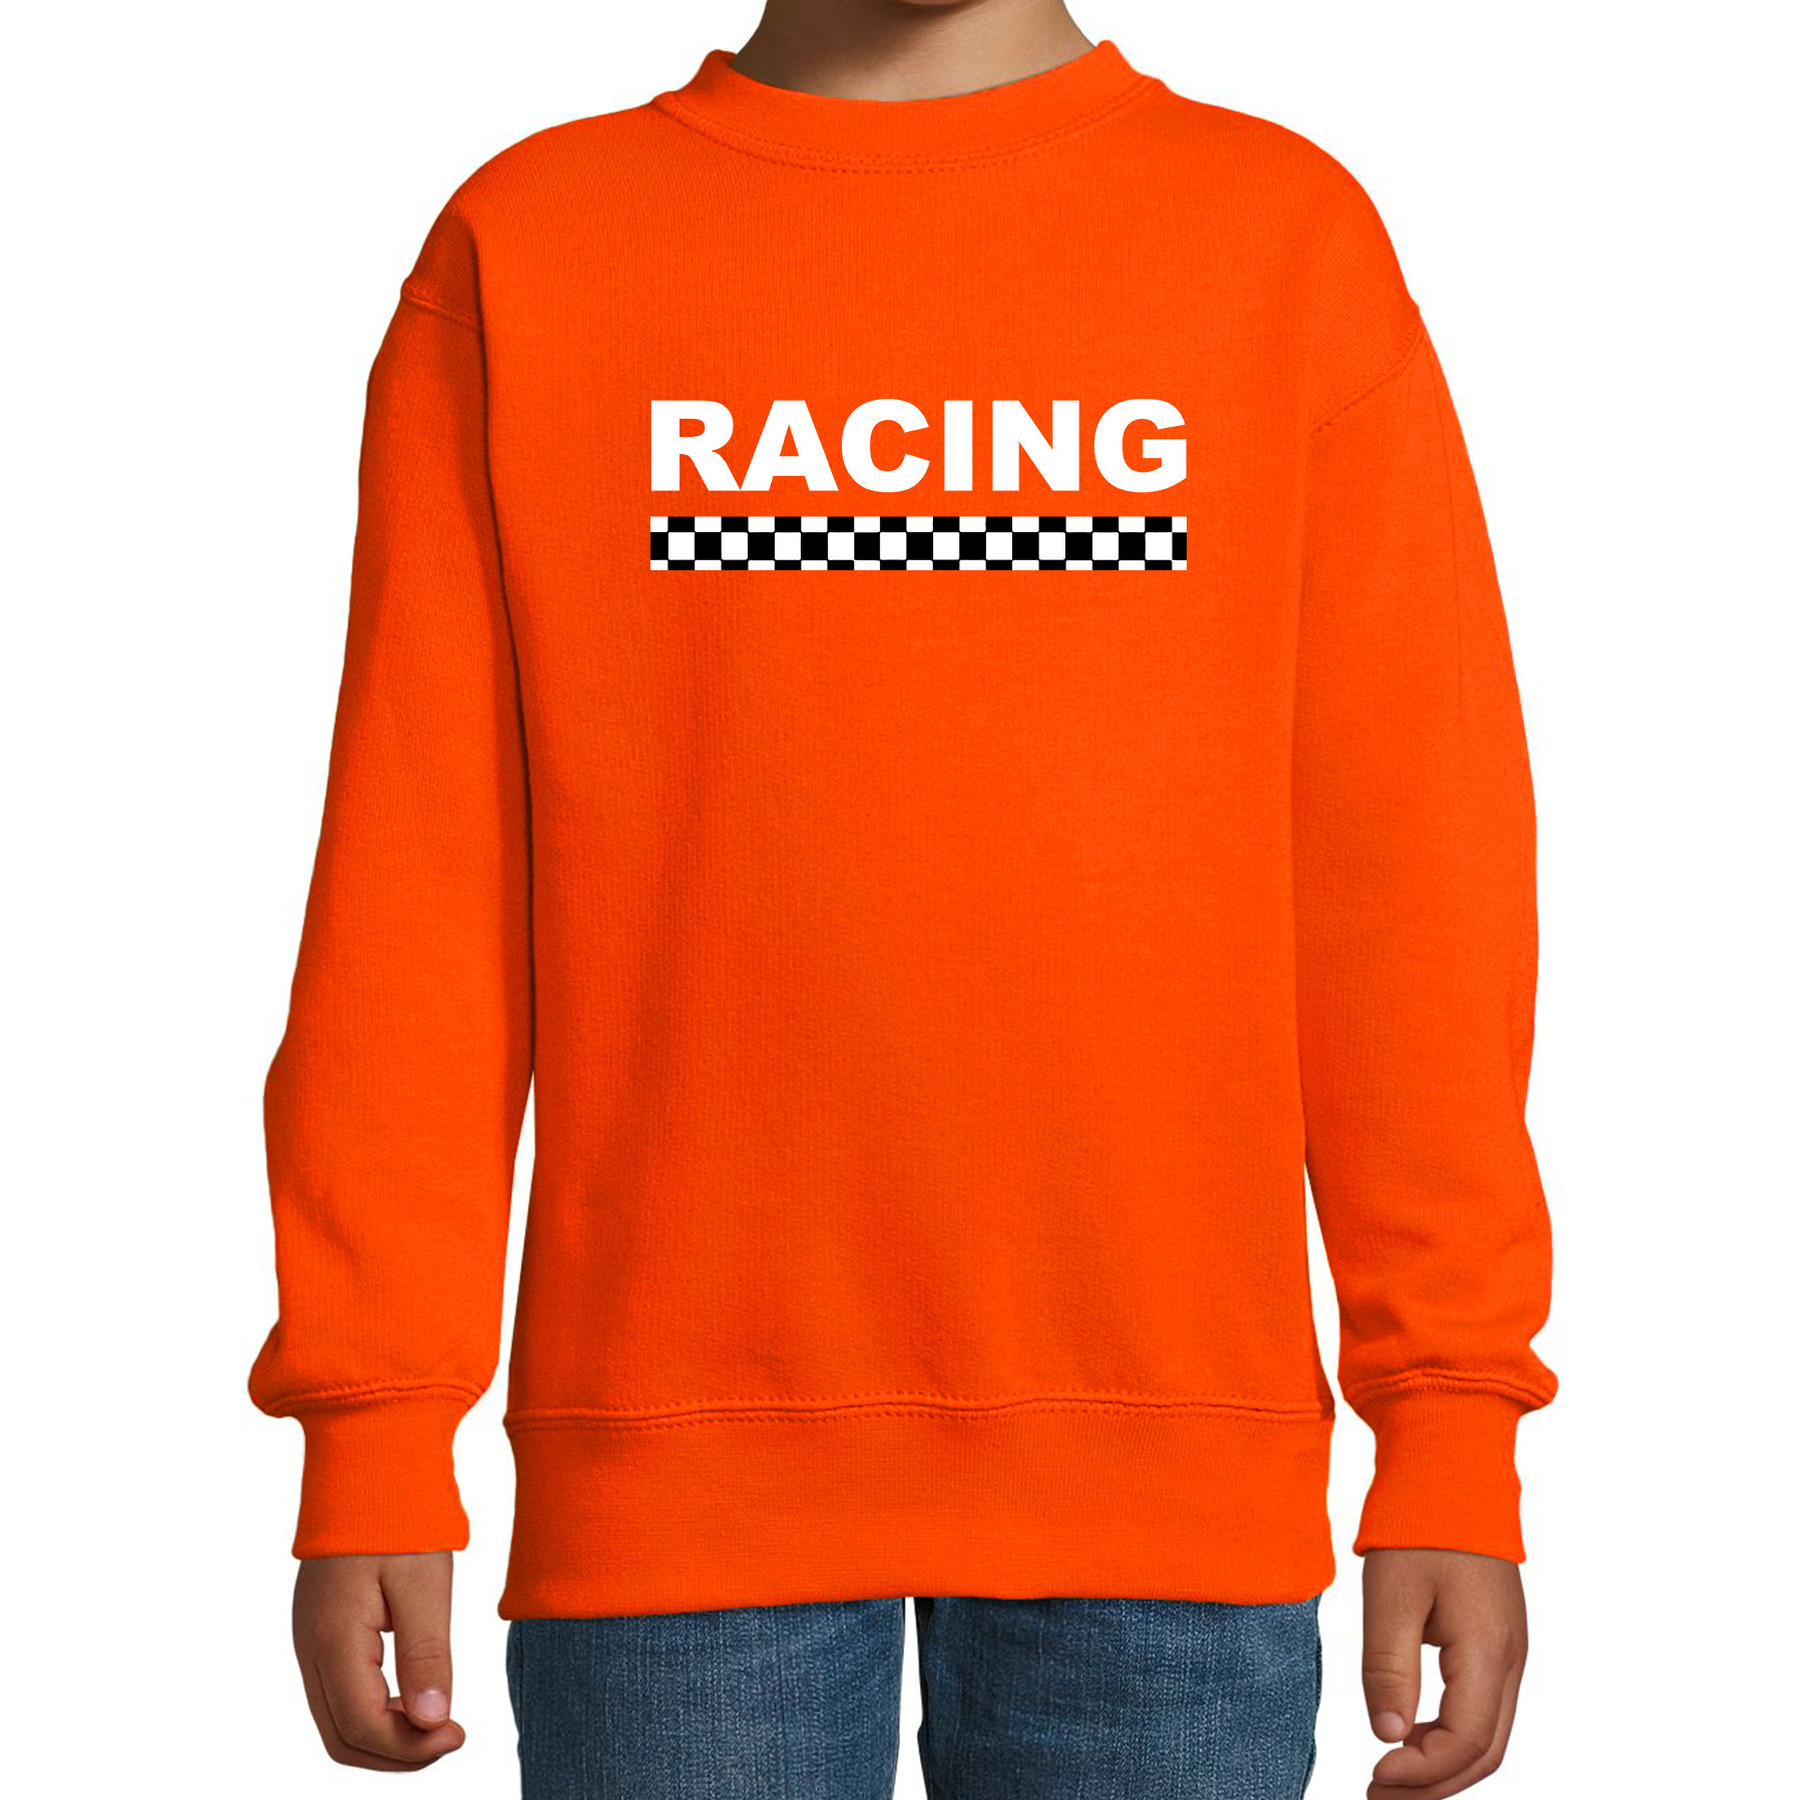 Racing coureur supporter - finish vlag sweater oranje voor kinderen